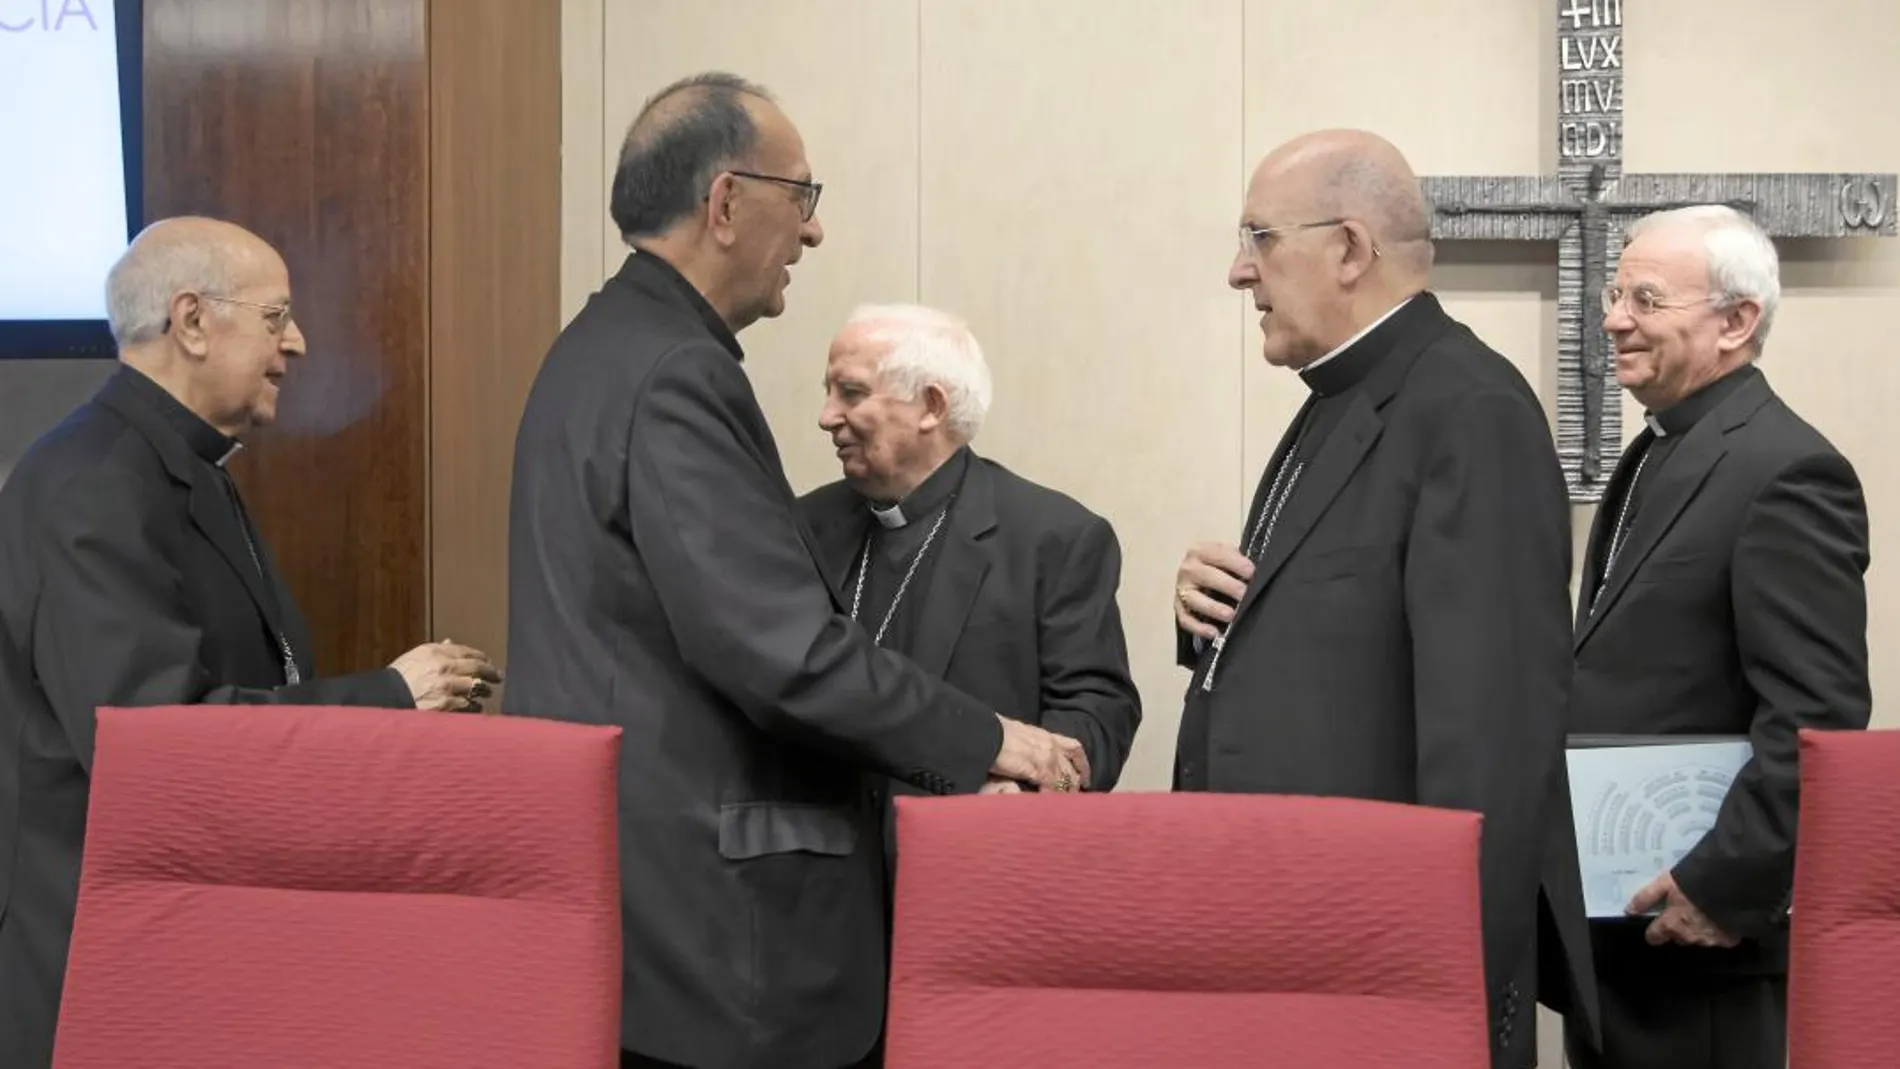 Los cardenales Ricardo Blázquez, Antonio Cañizares, Juan José Omella, Carlos Osoro, y el nuncio apostólico Renzo Fratini, ayer, en la inauguración de la Asamblea Plenaria